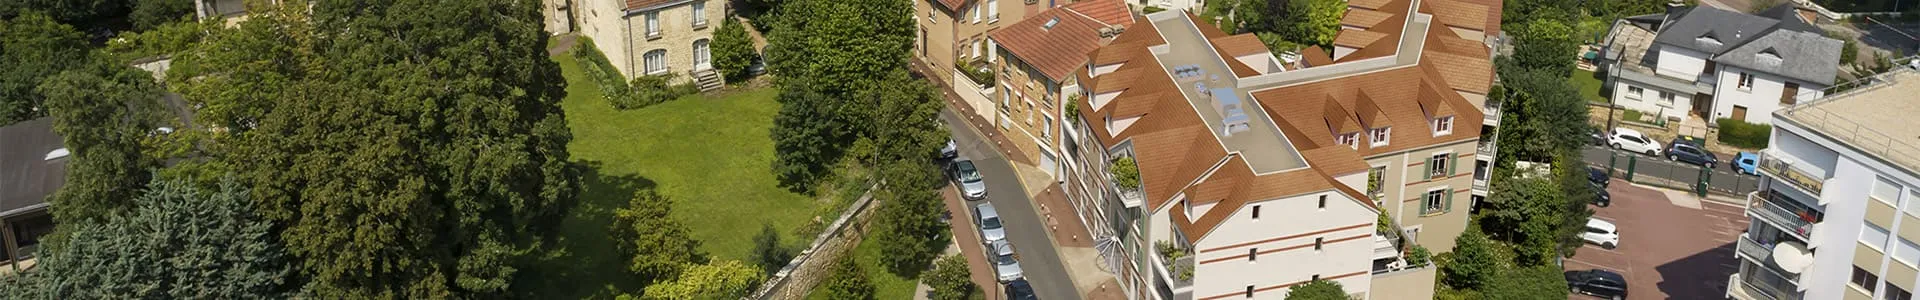 Vue aérienne de la résidence Pavillon Garnier